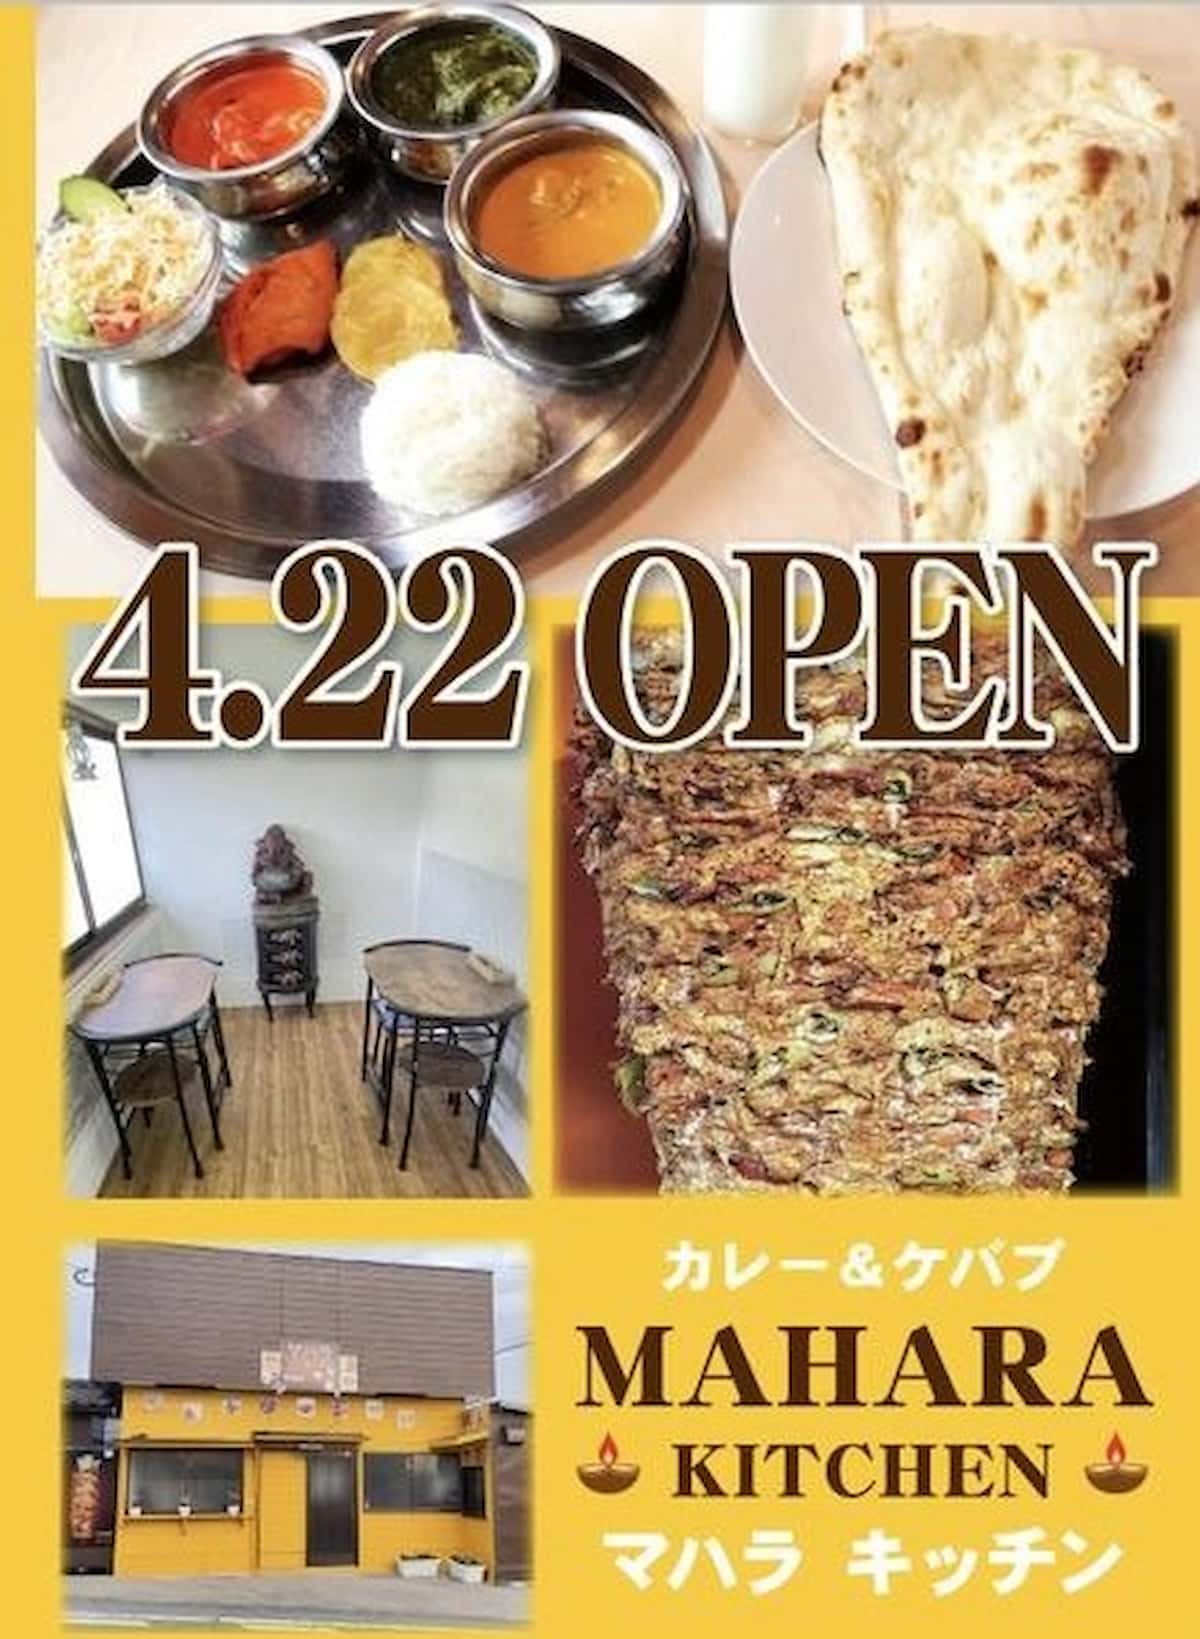 マハラキッチンってインドカレーとドネルケバブの店が4月22日にオープンしてるみたい。大牟田市久福木